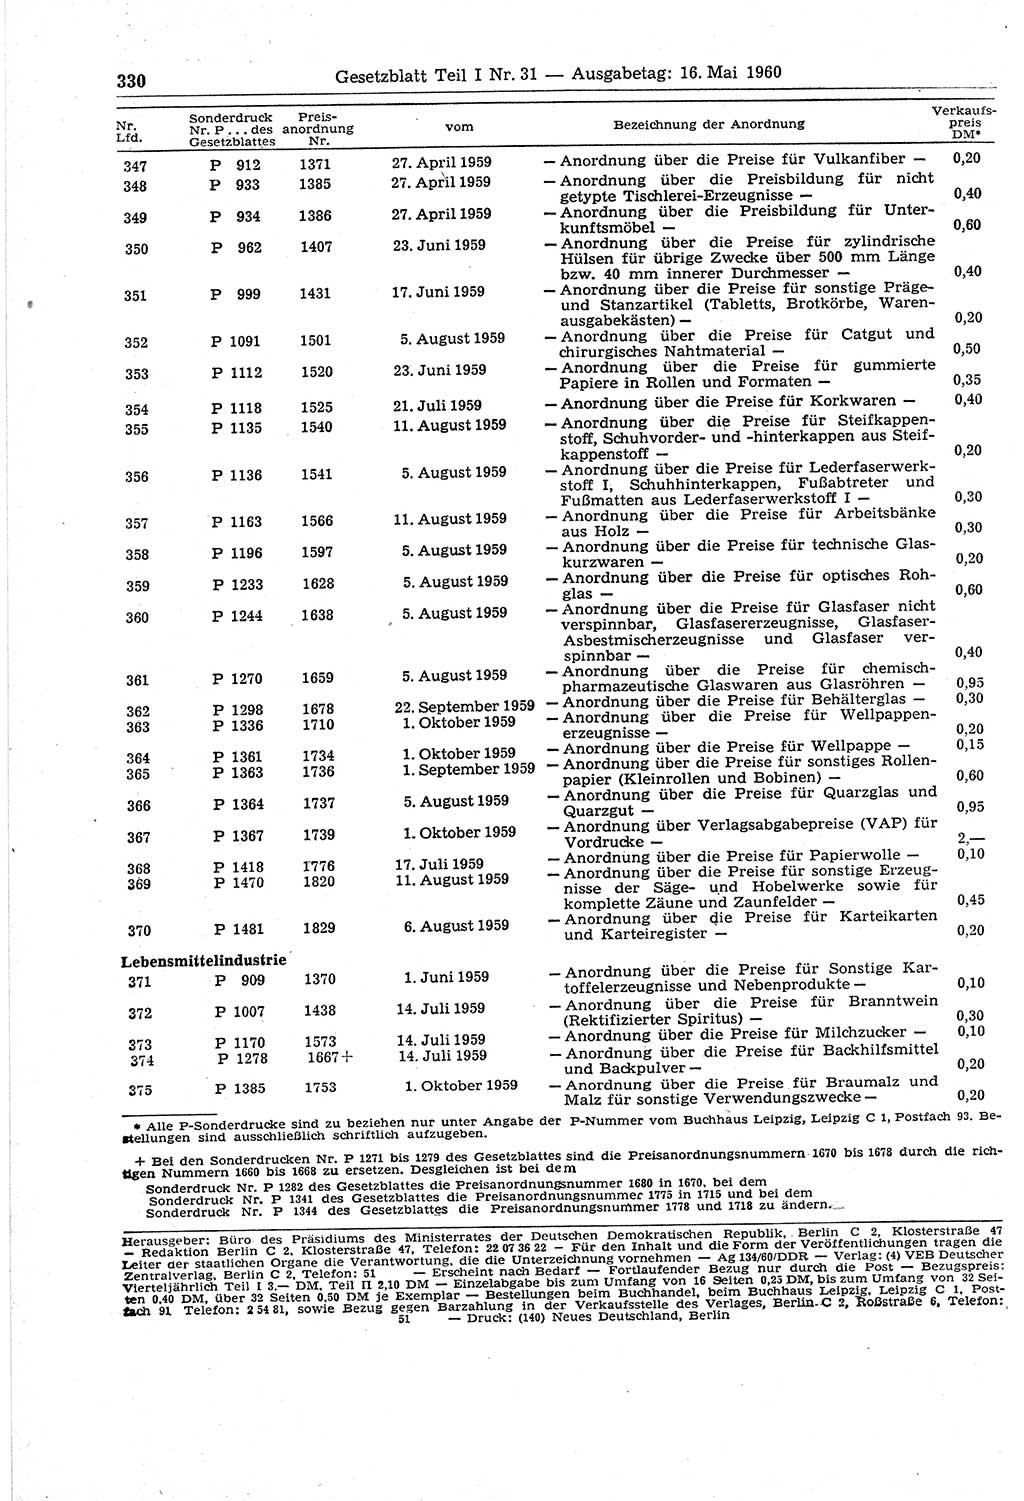 Gesetzblatt (GBl.) der Deutschen Demokratischen Republik (DDR) Teil Ⅰ 1960, Seite 330 (GBl. DDR Ⅰ 1960, S. 330)